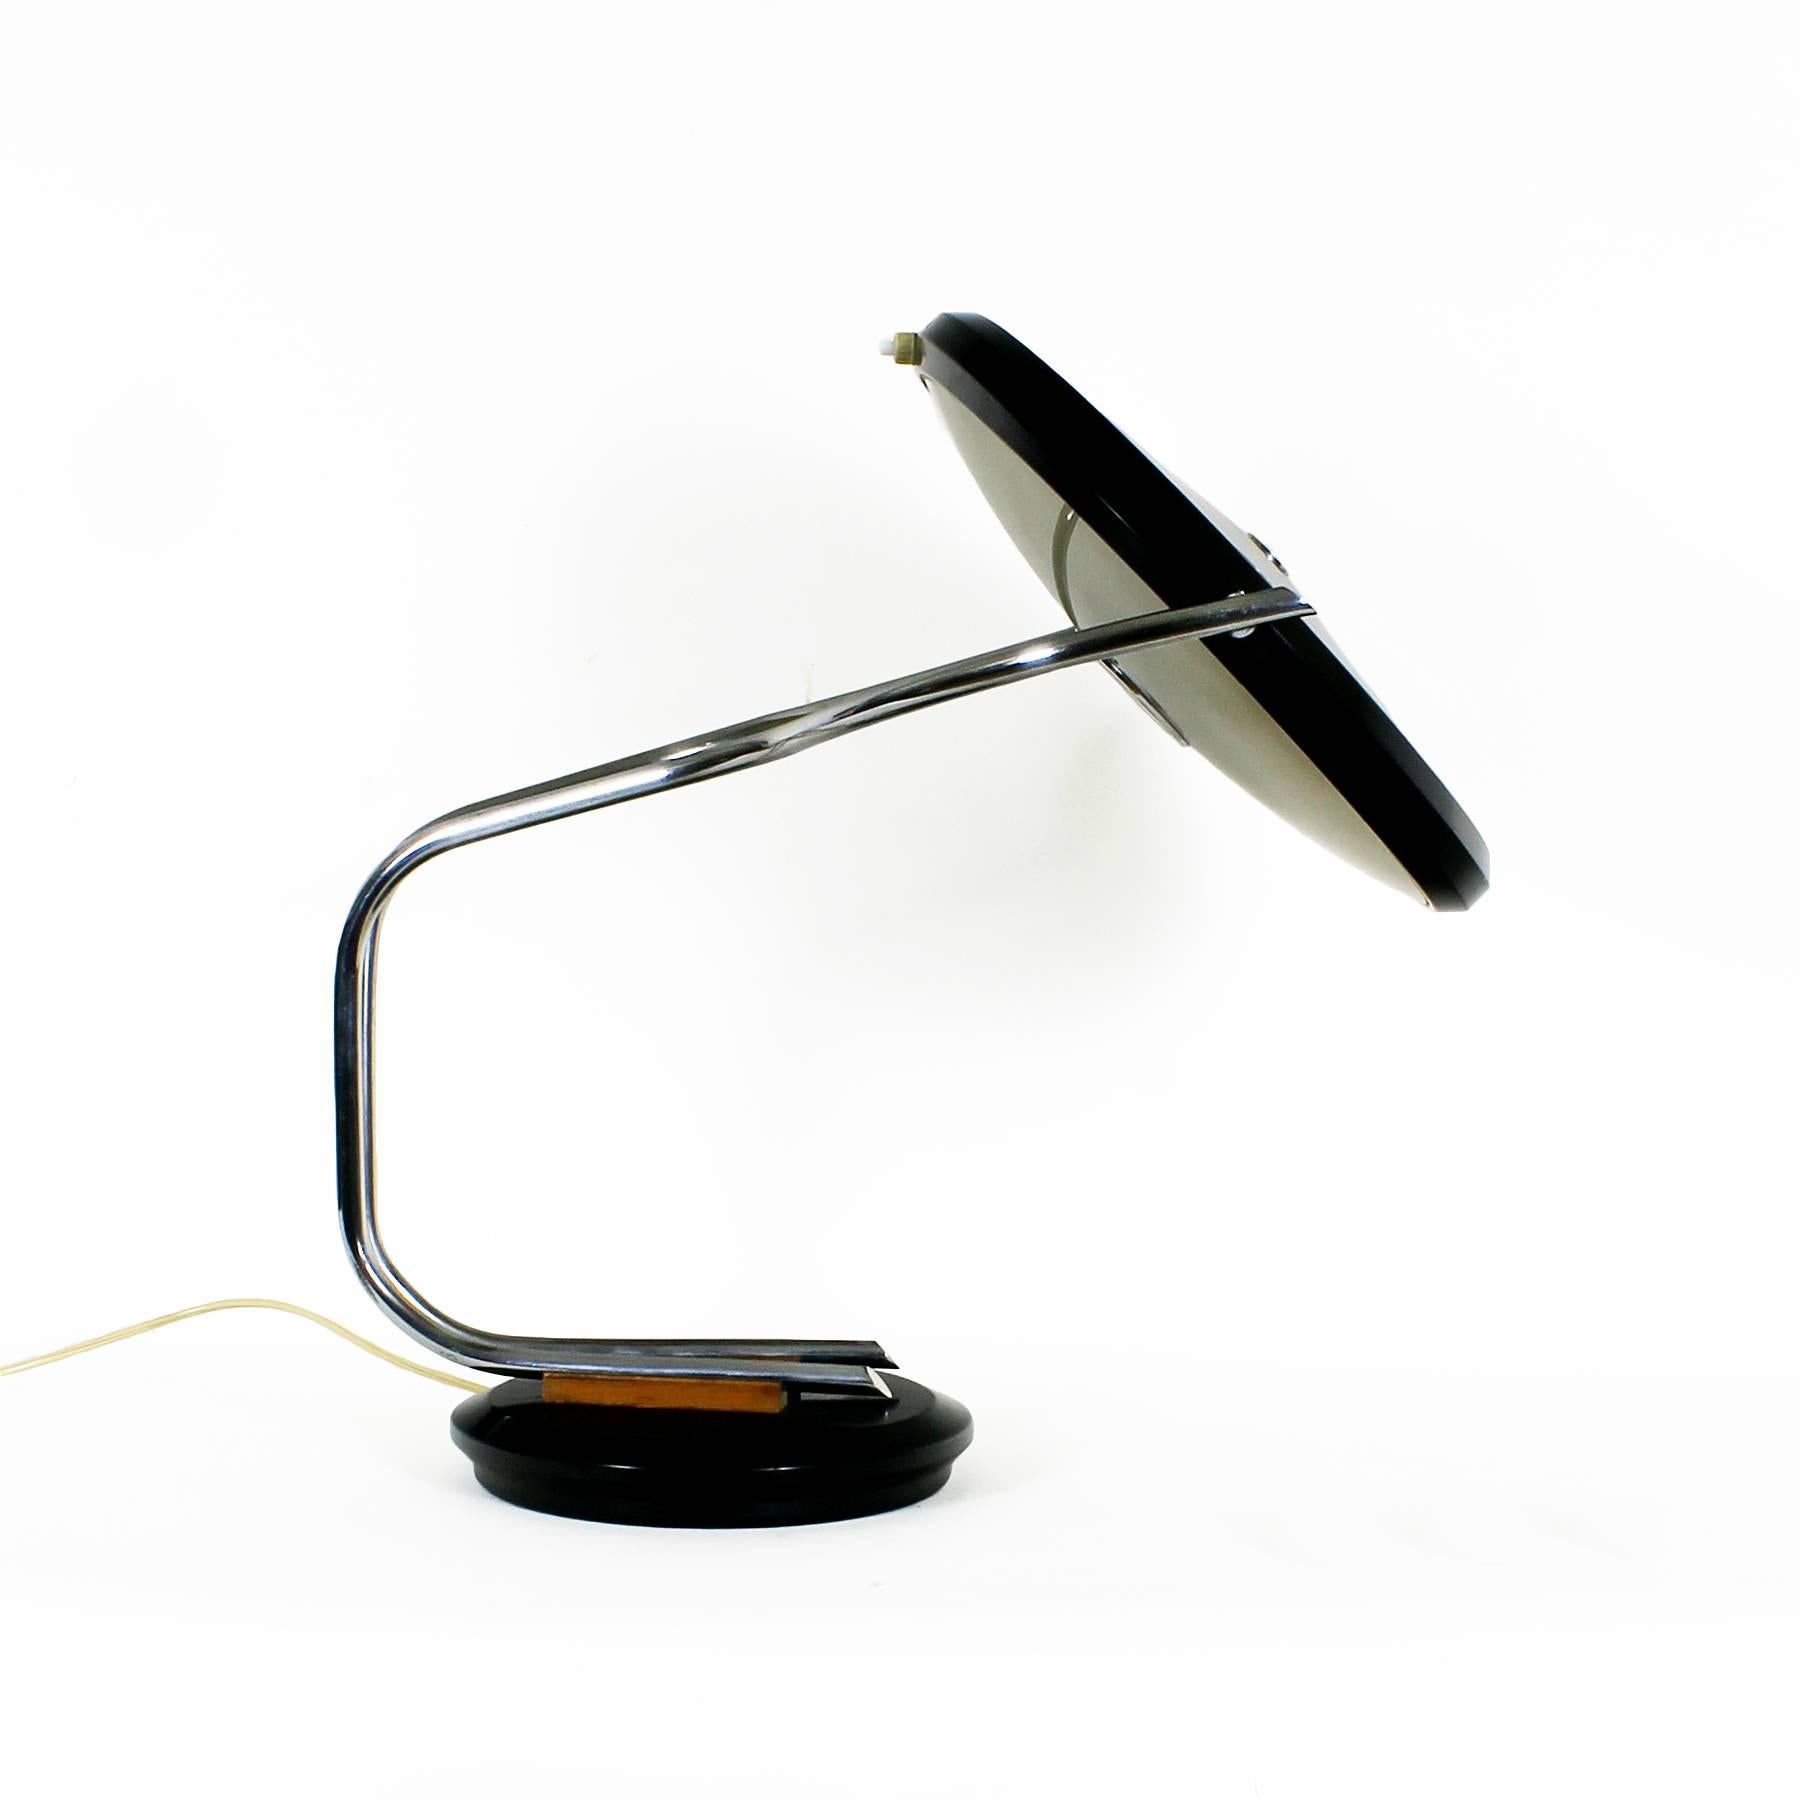 Seltene Schreibtischlampe, drehbarer Sockel und schwenkbarer Lampenschirm, verchromtes Metall, schwarz lackiertes Blech, Teakholz und geschliffenes Glas.
Schöpfer: Fase

Spanien, um 1960.